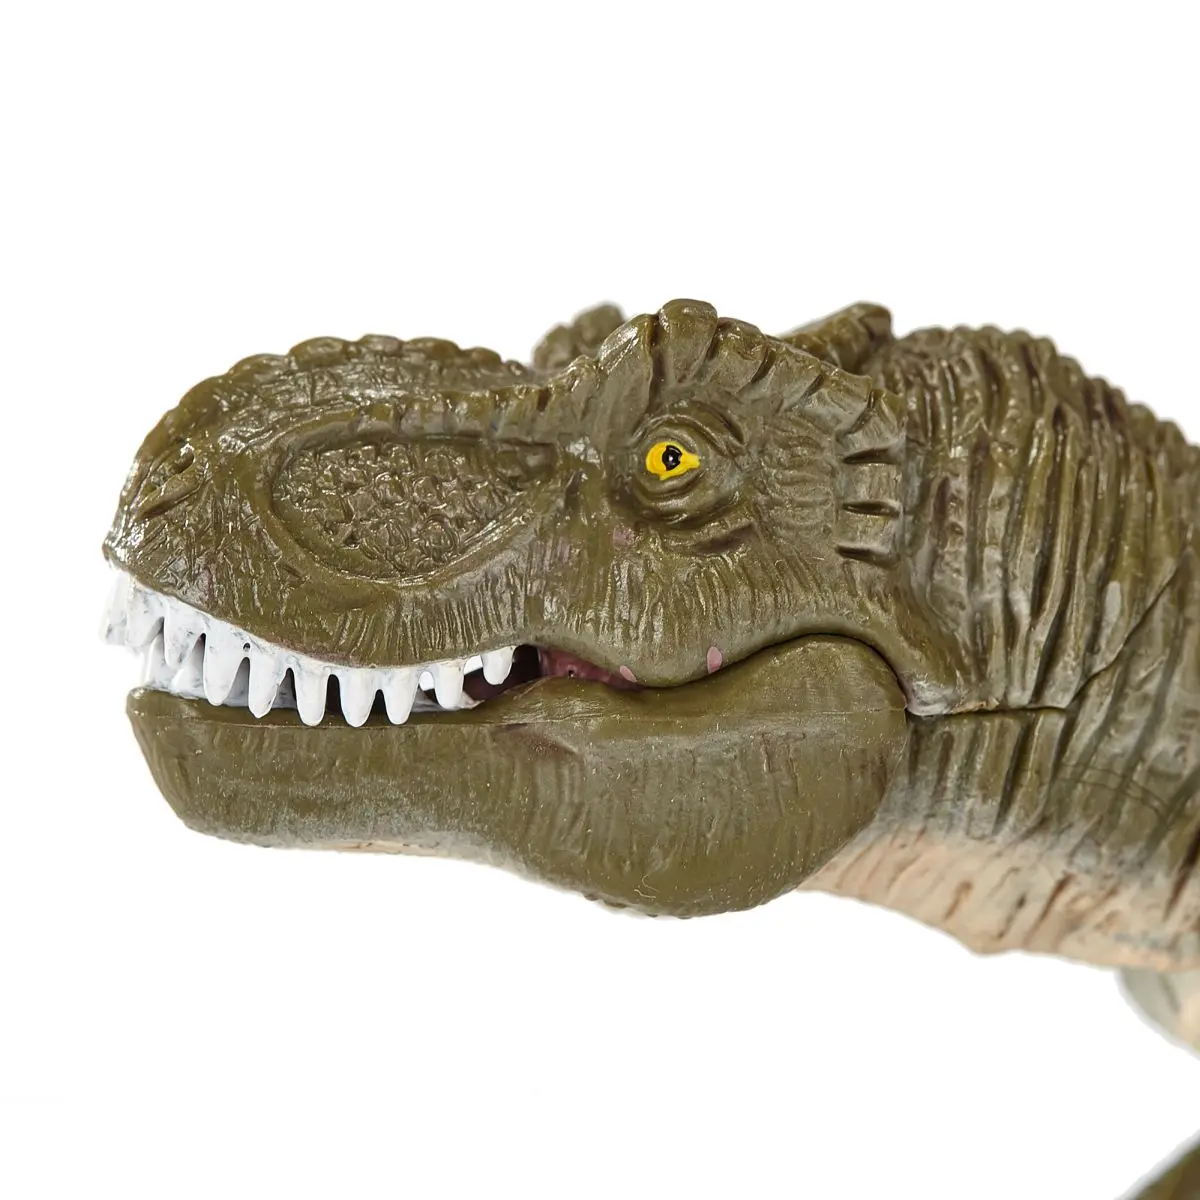 Тираннозавр с подвижной челюстью - фото